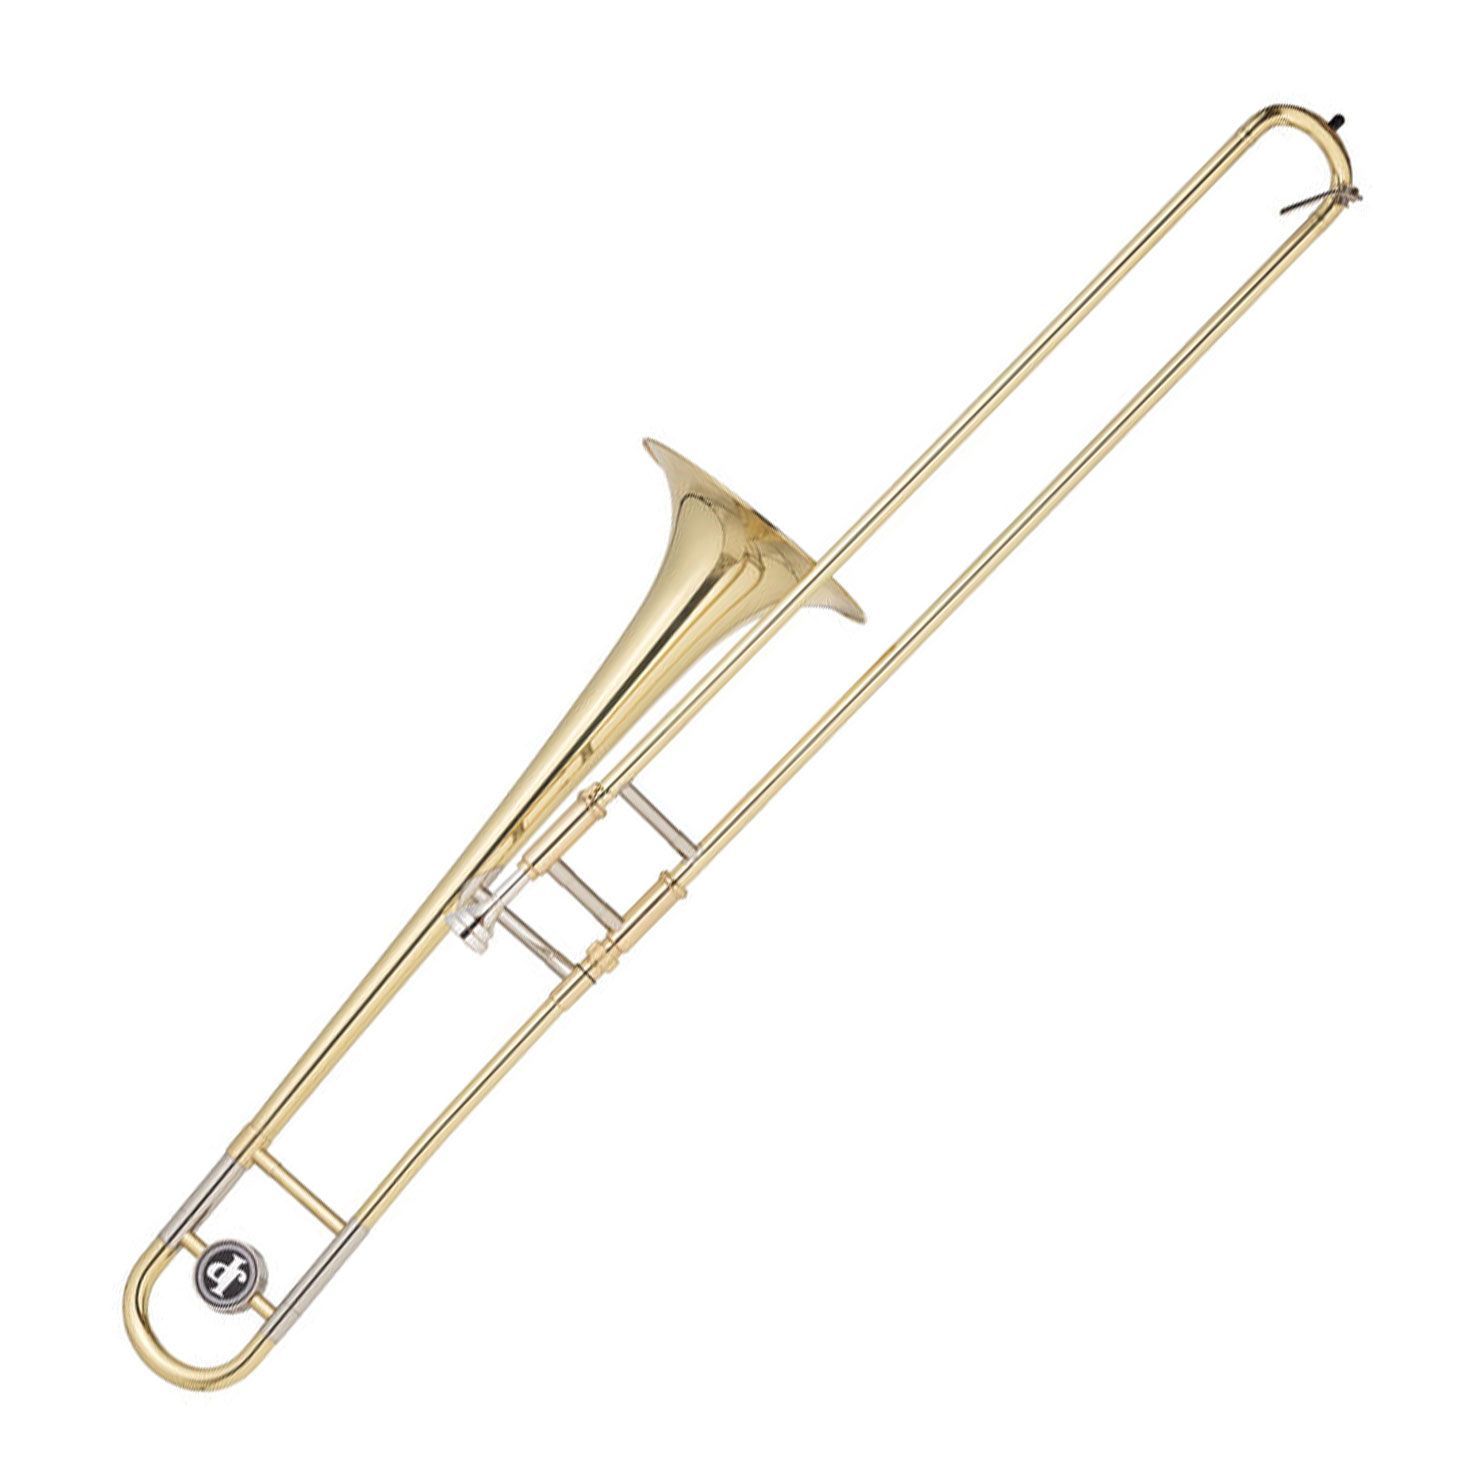 JP031 Bb Trombone - medium bore